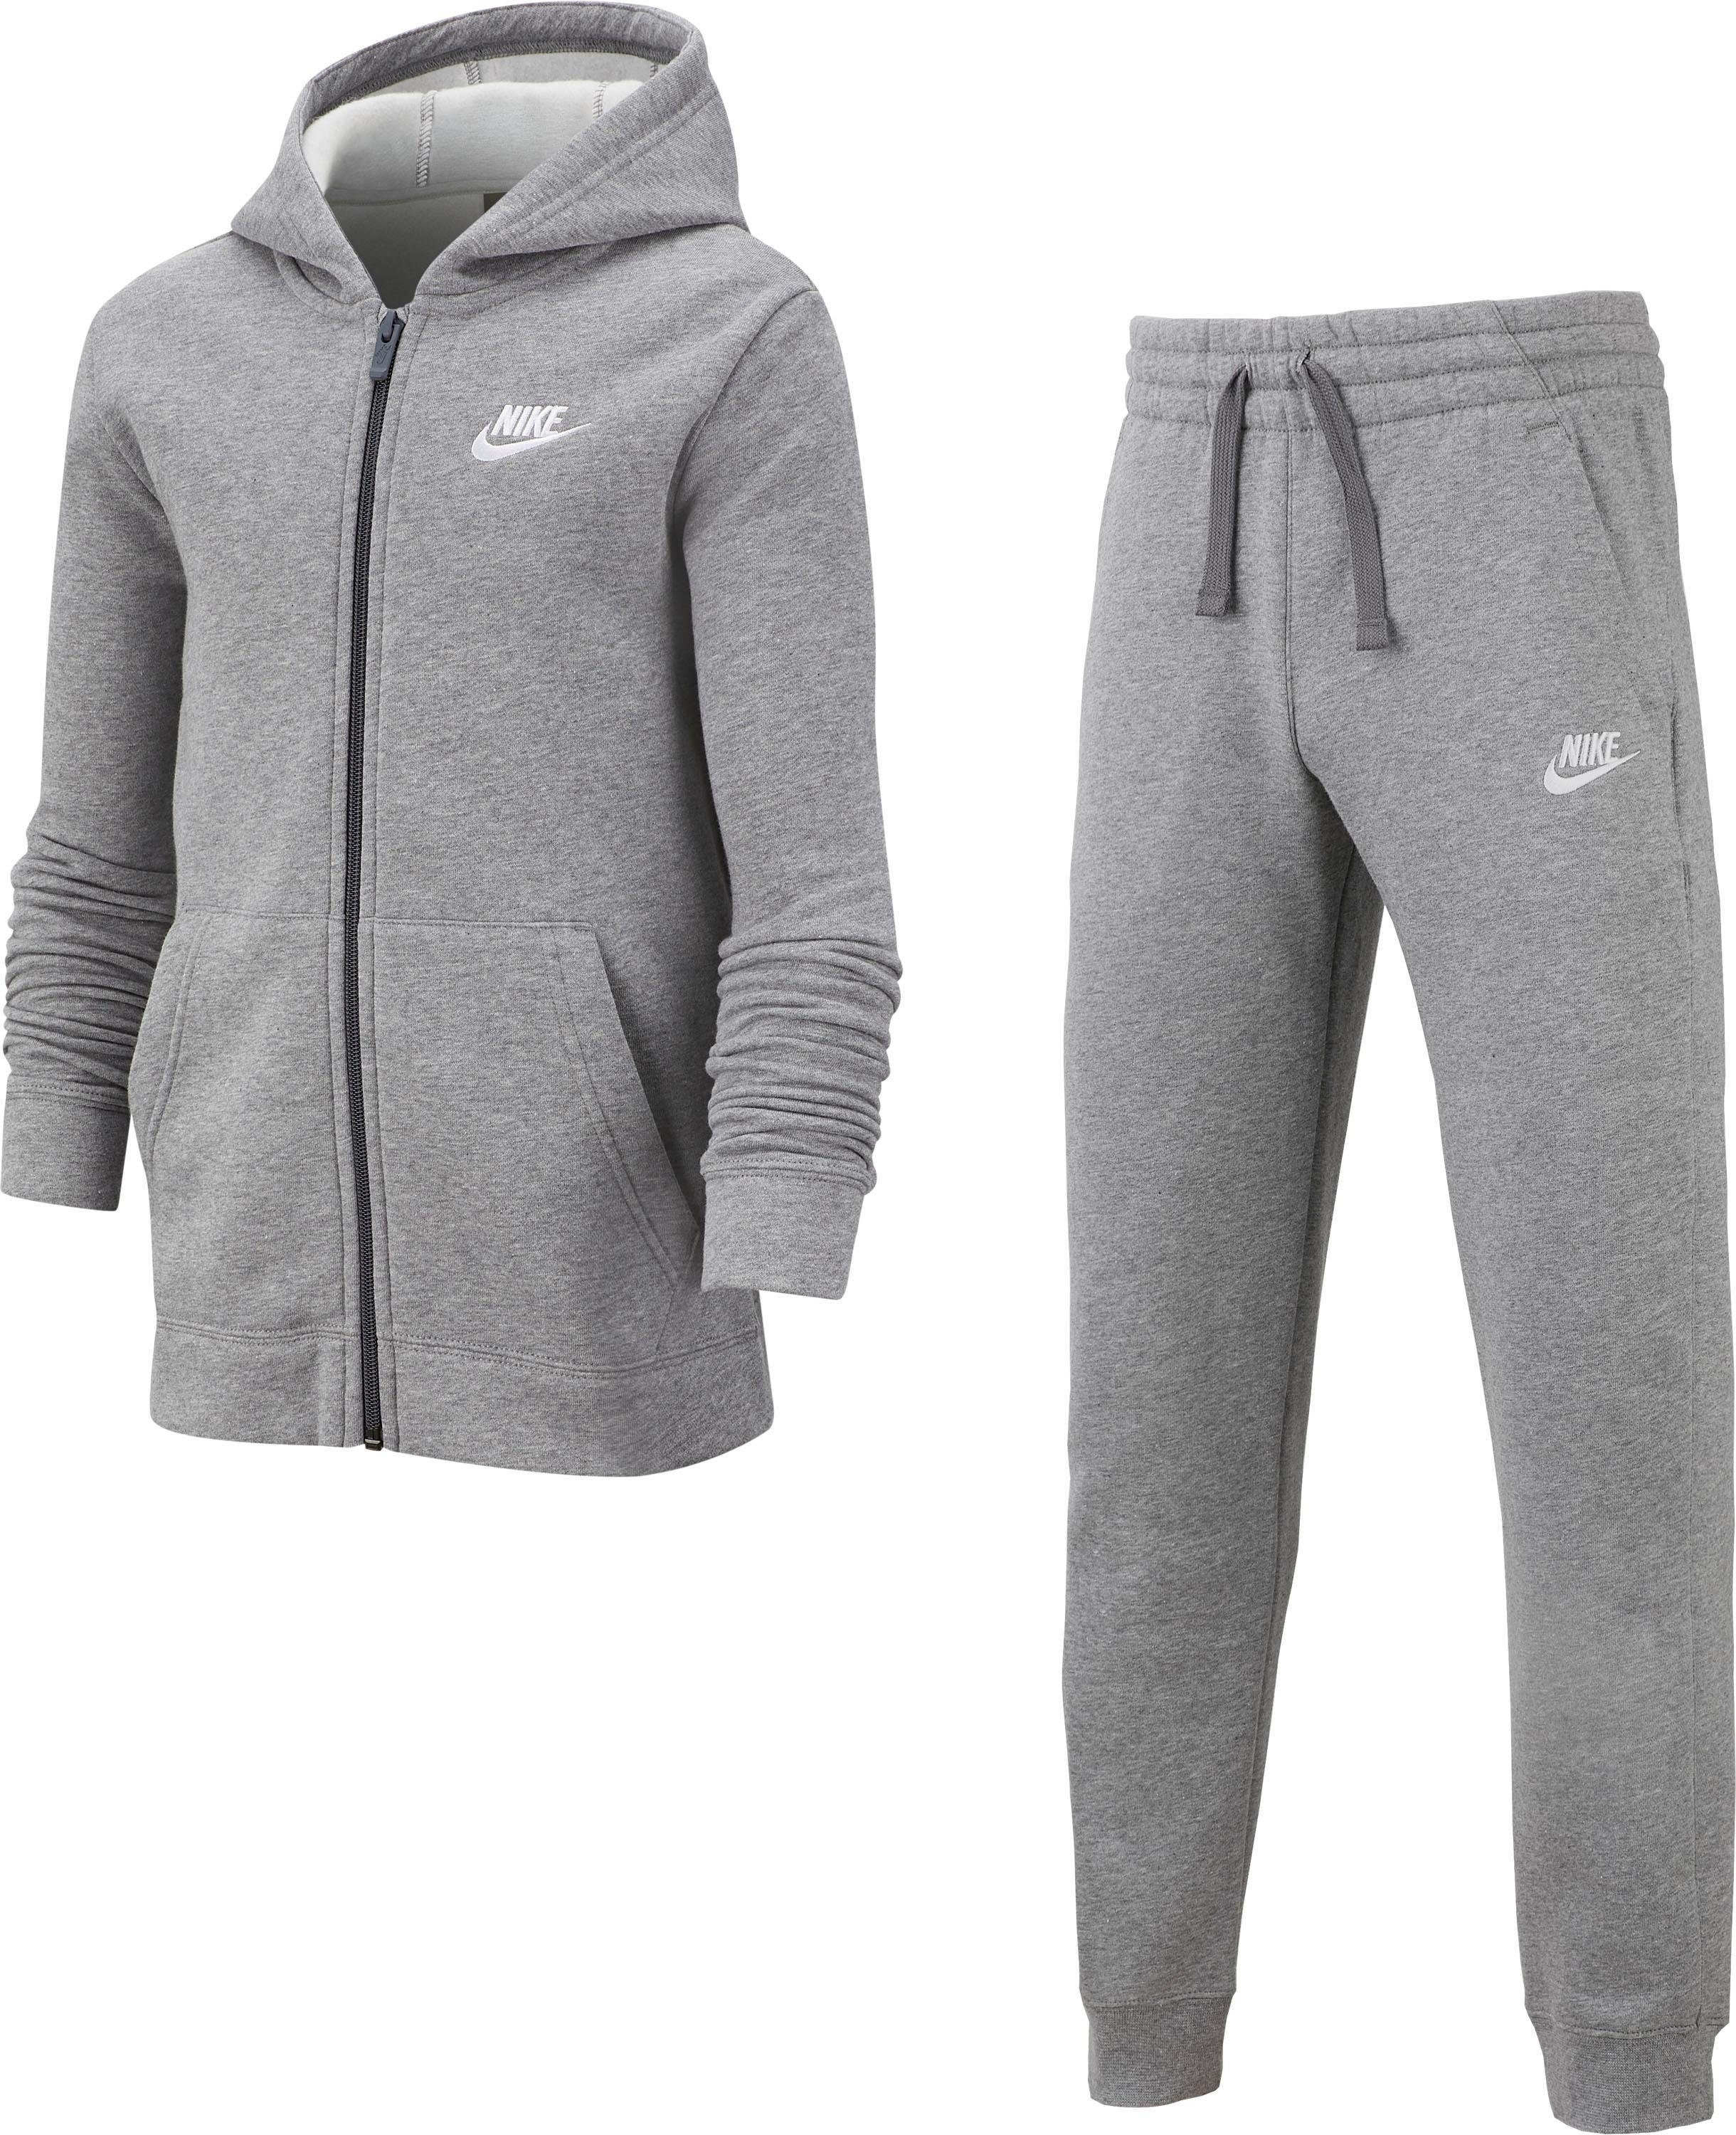 nike sportswear joggingpak nsw core voor kinderen (set, 2-delig) grijs